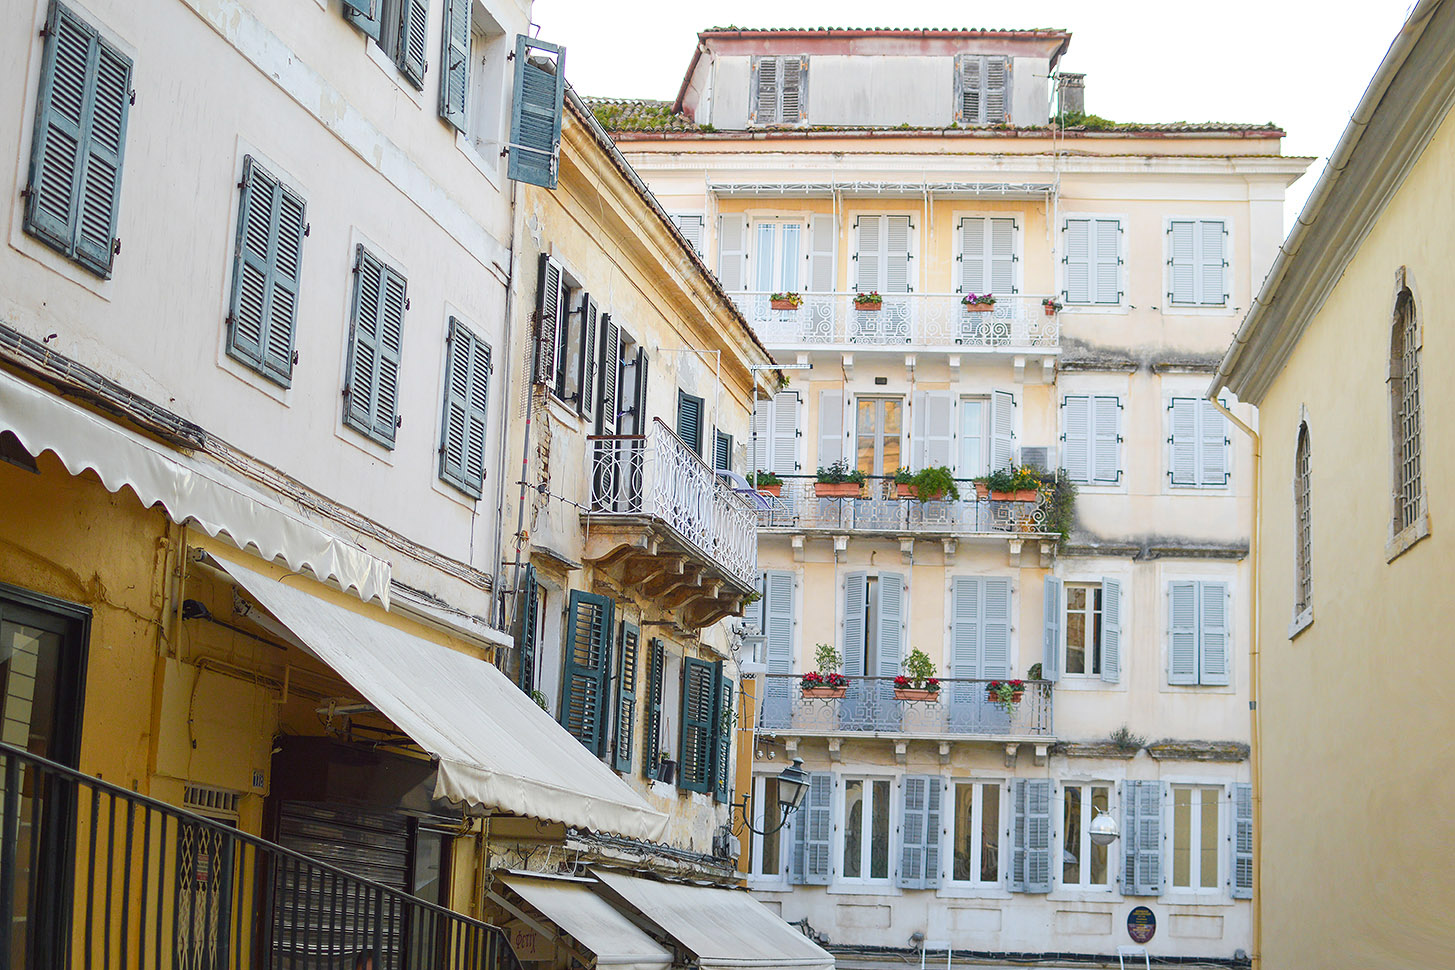 Exploring Corfu Town by Tamara Bellis